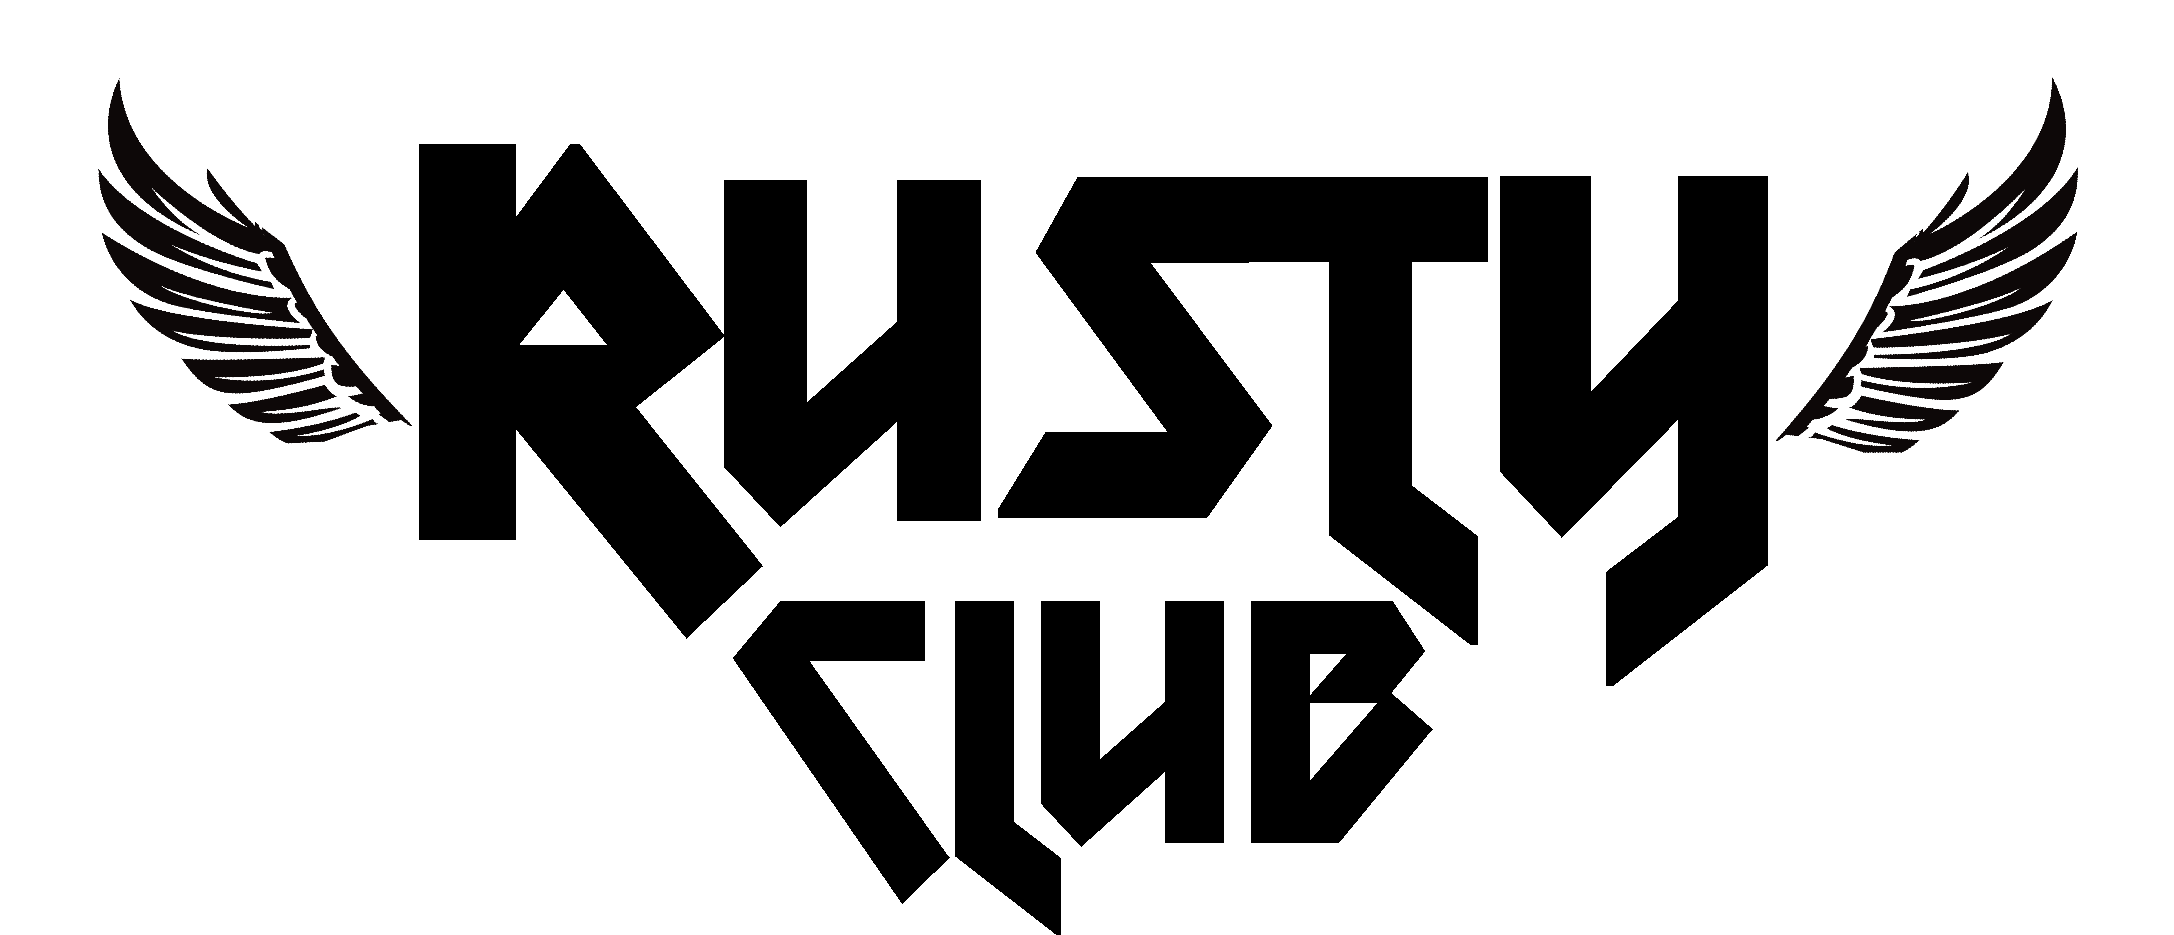 Rusty Logo - RUSTY CLUB LOGO « FREELASTICA